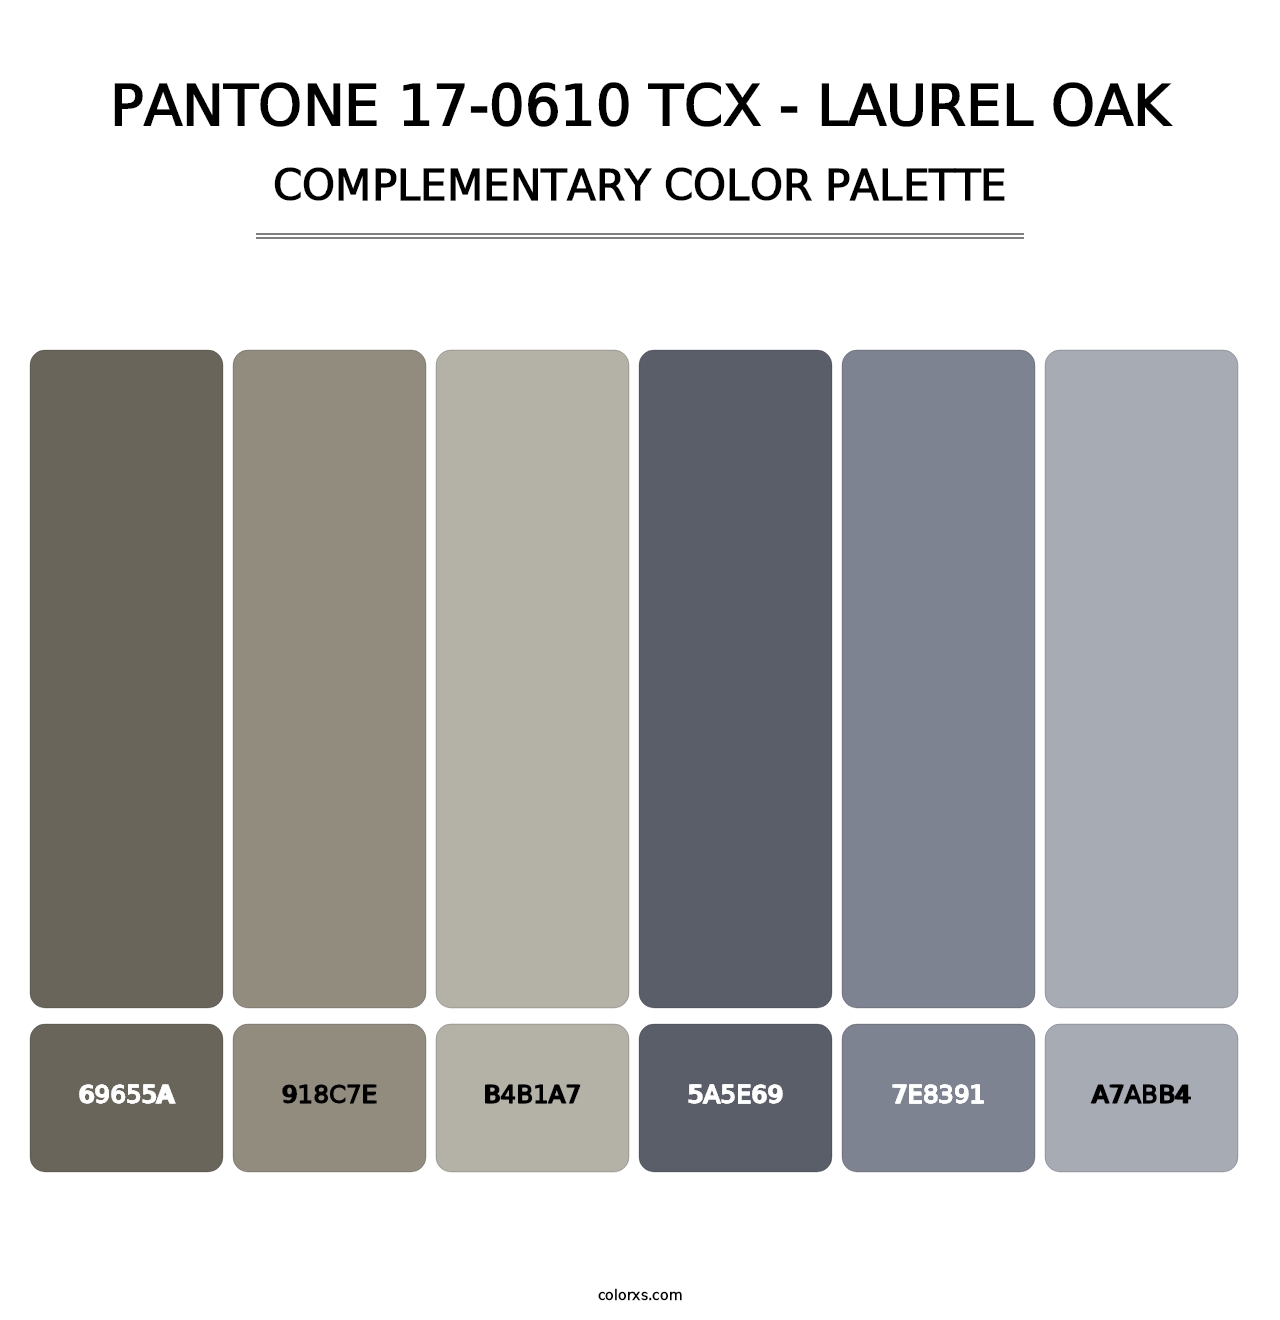 PANTONE 17-0610 TCX - Laurel Oak - Complementary Color Palette